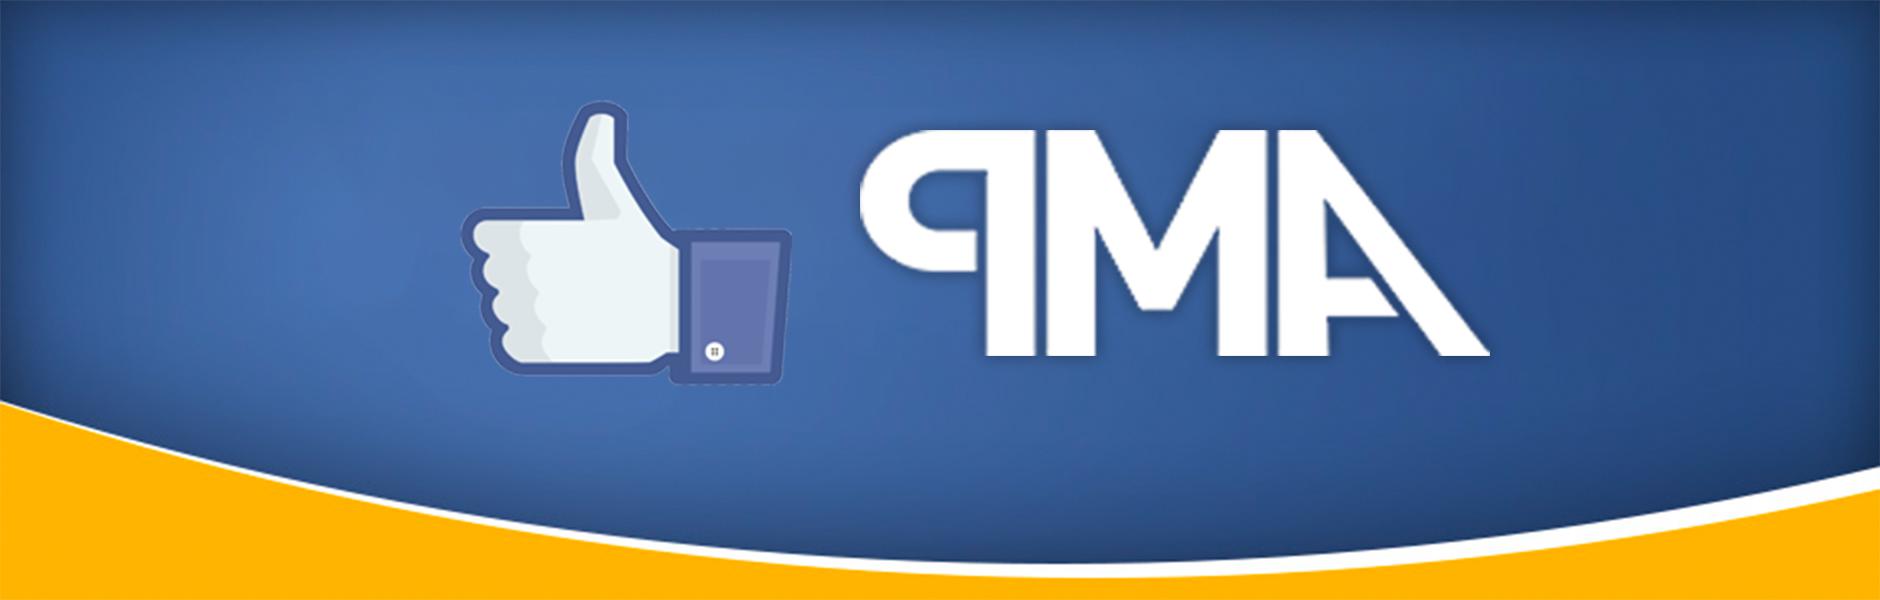 amp标志和facebook喜欢按钮的图像